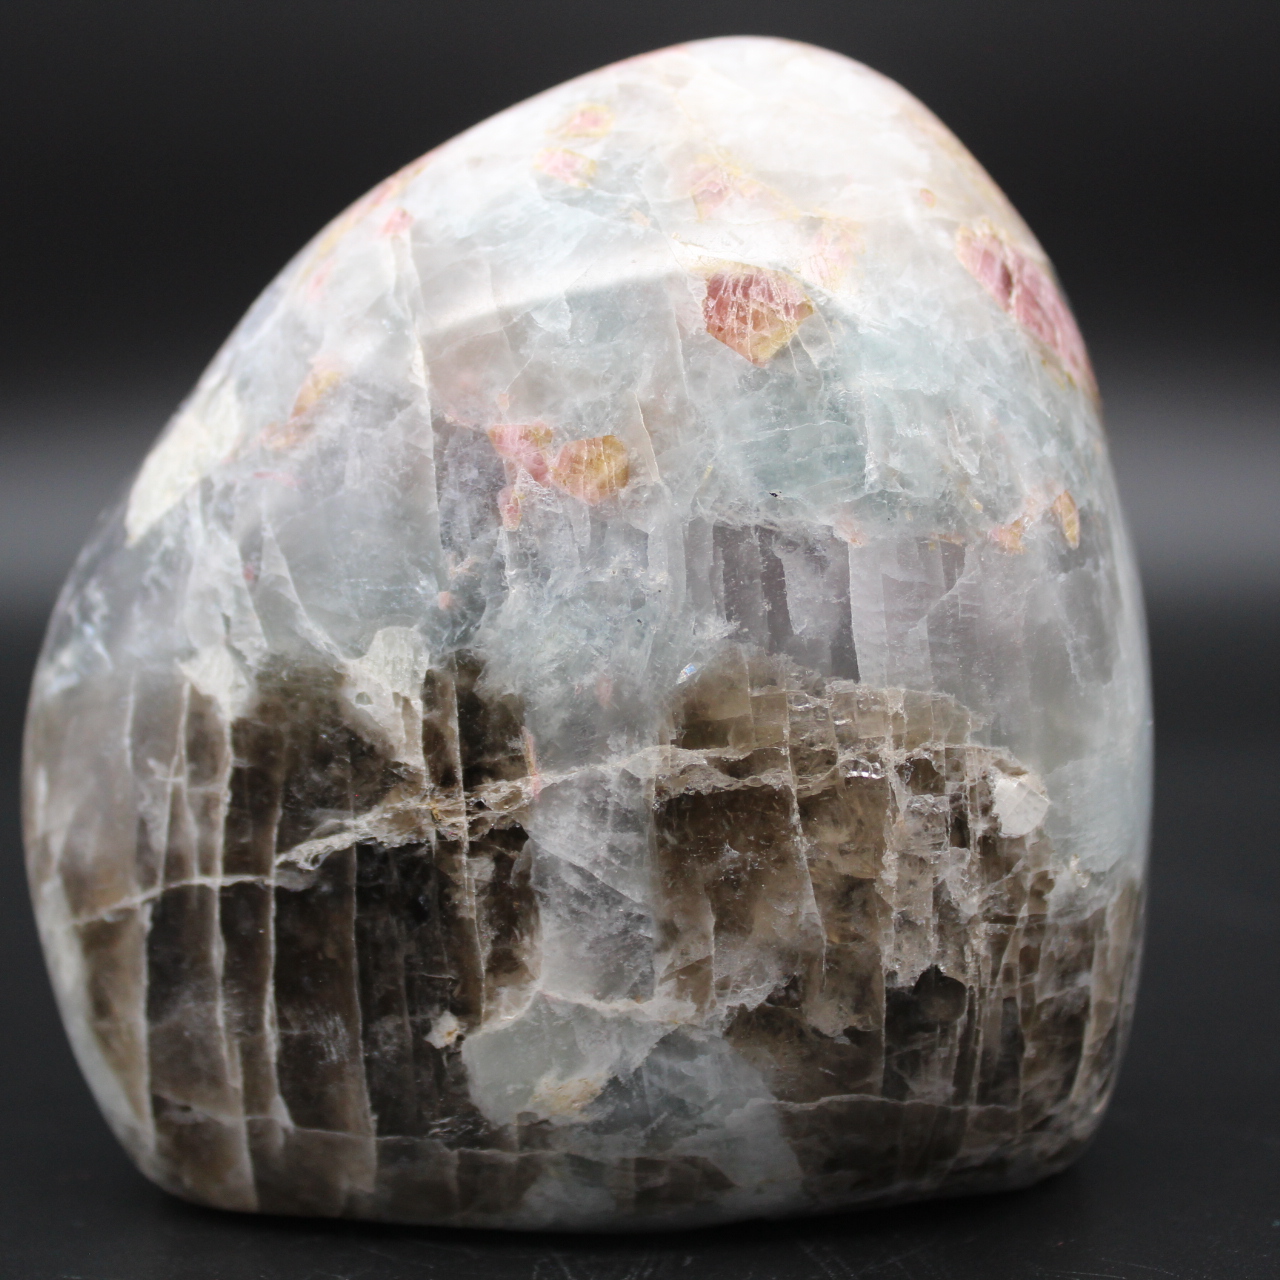 Pedra de forma livre com inclusão de turmalina